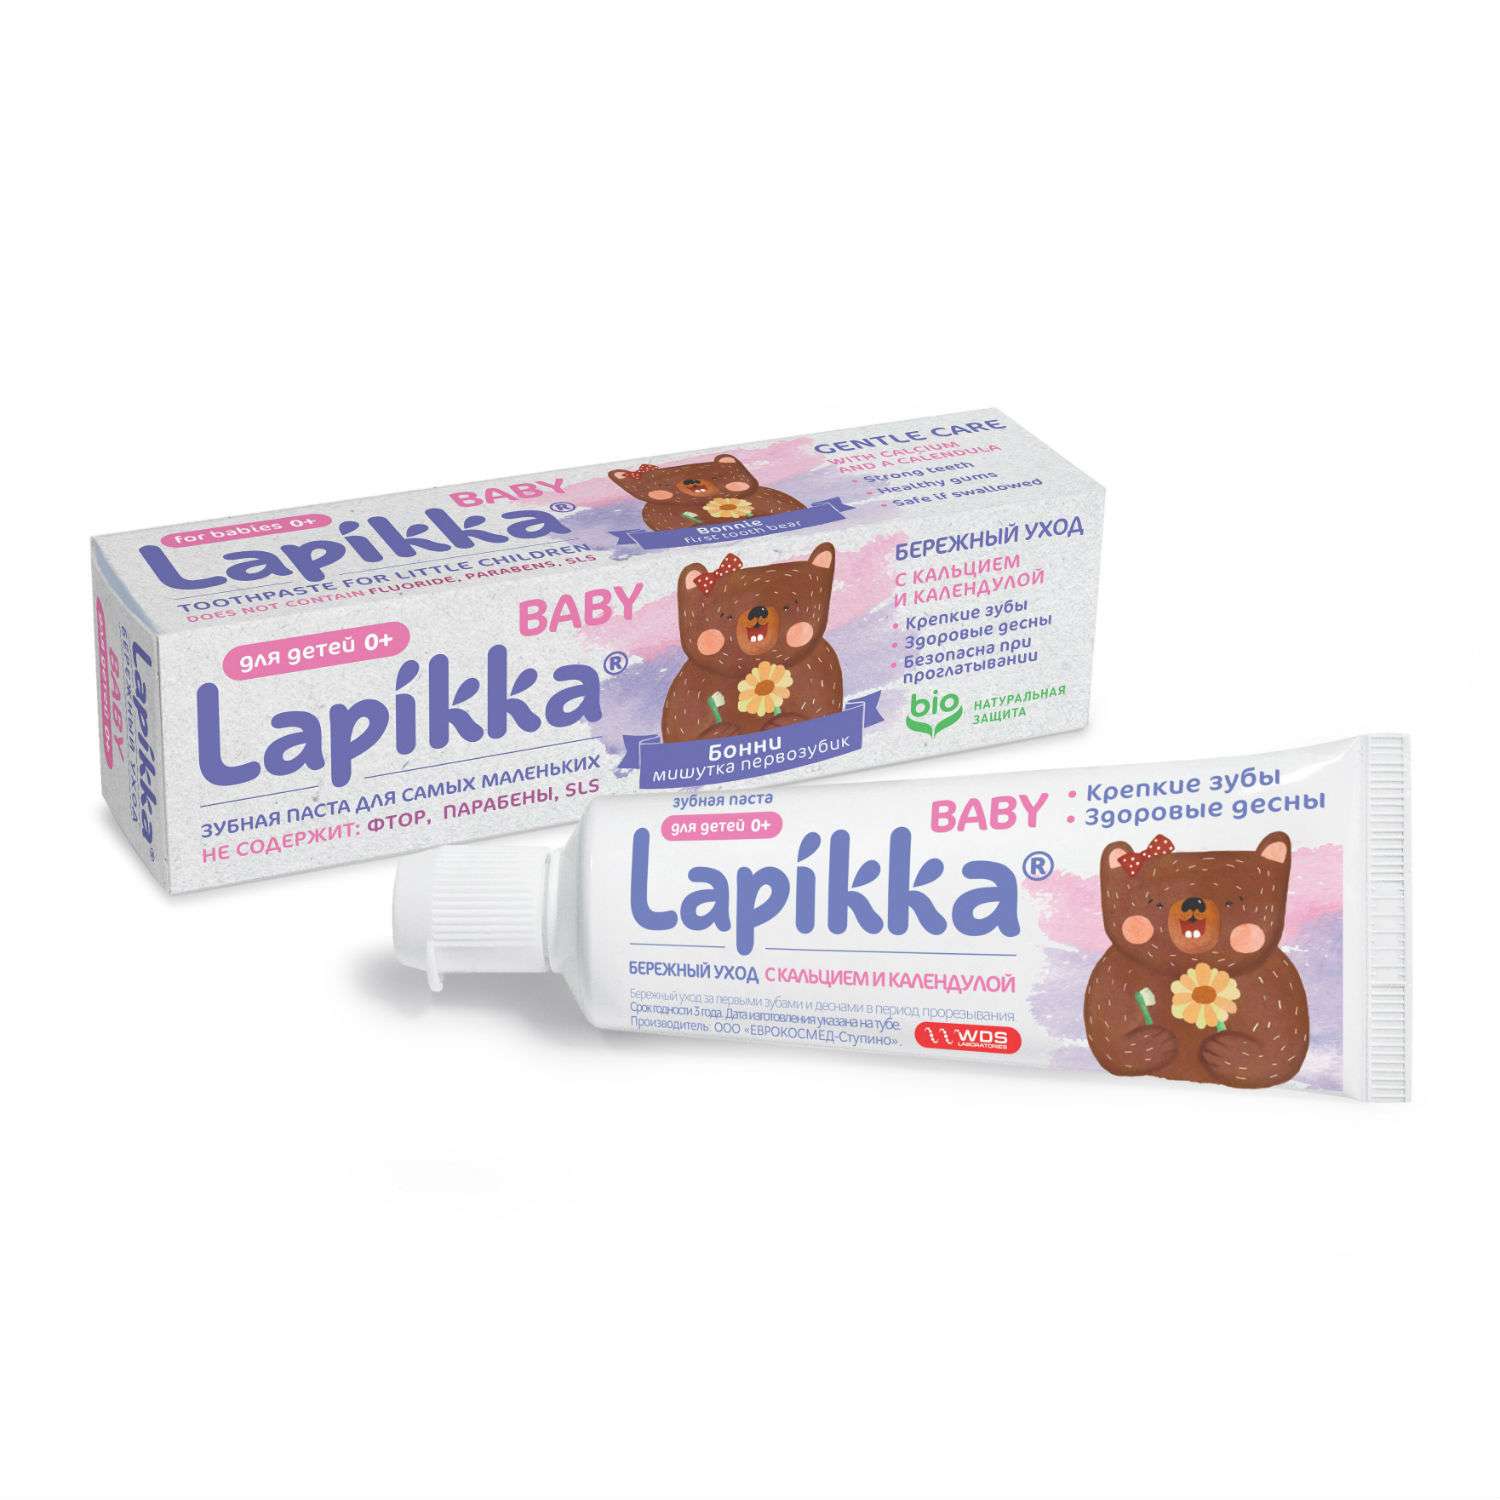 Зубная паста Lapikka Baby Бережный уход с кальцием и календулой 45 г - фото 1